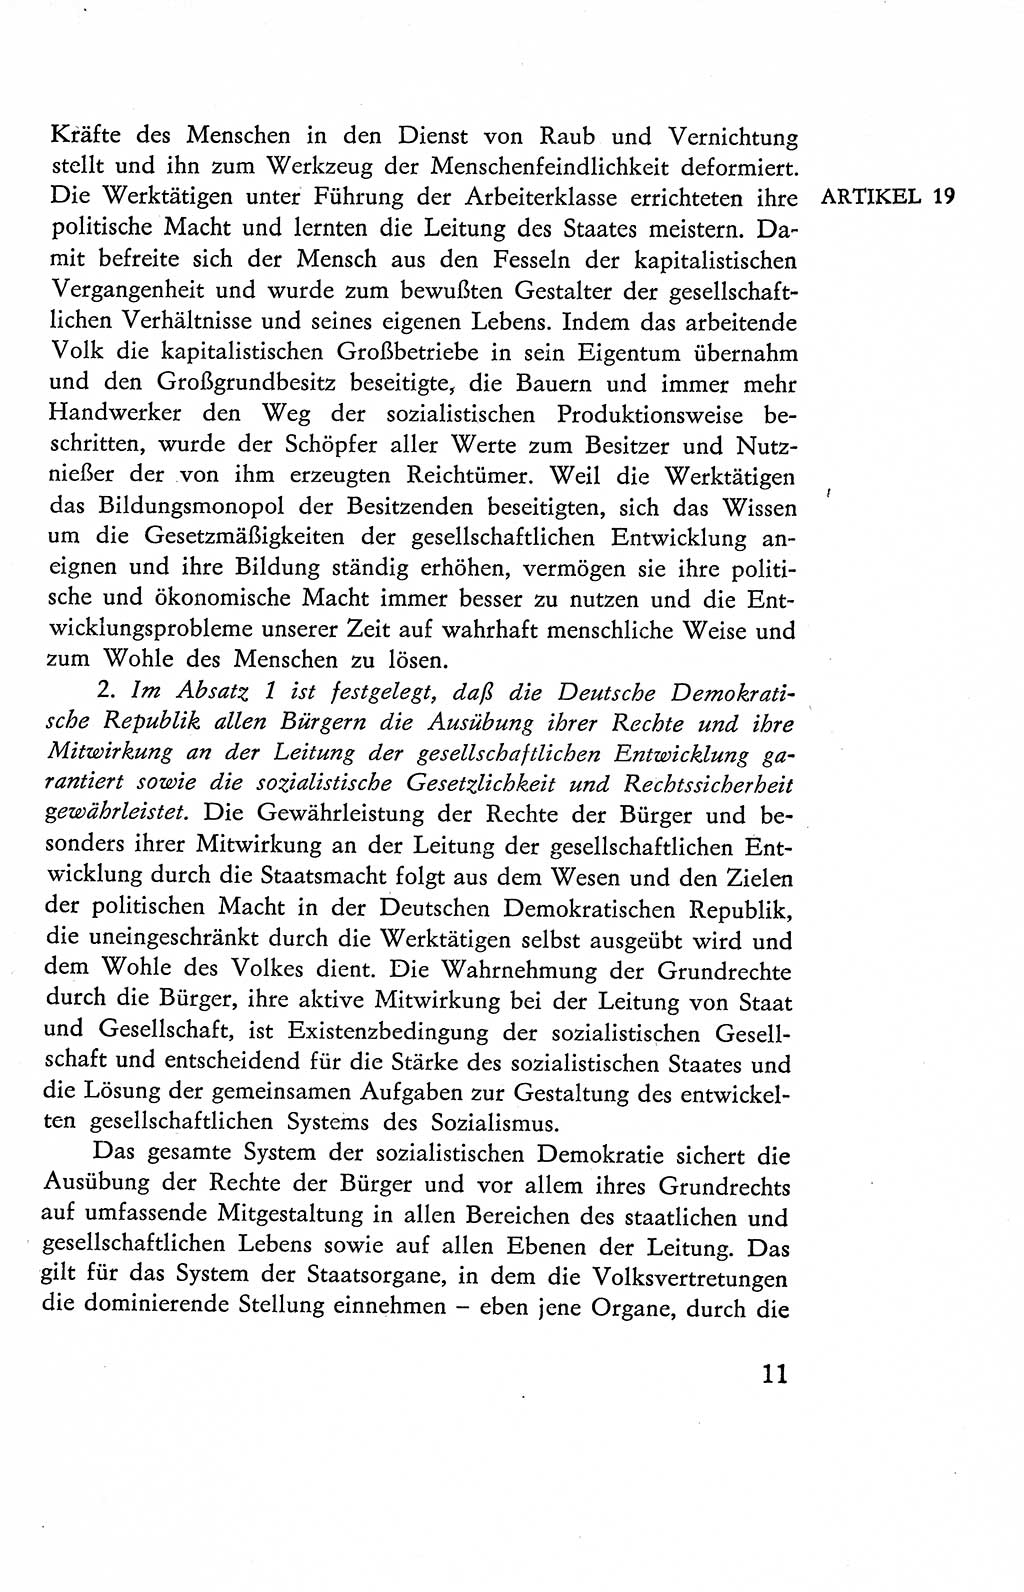 Verfassung der Deutschen Demokratischen Republik (DDR), Dokumente, Kommentar 1969, Band 2, Seite 11 (Verf. DDR Dok. Komm. 1969, Bd. 2, S. 11)